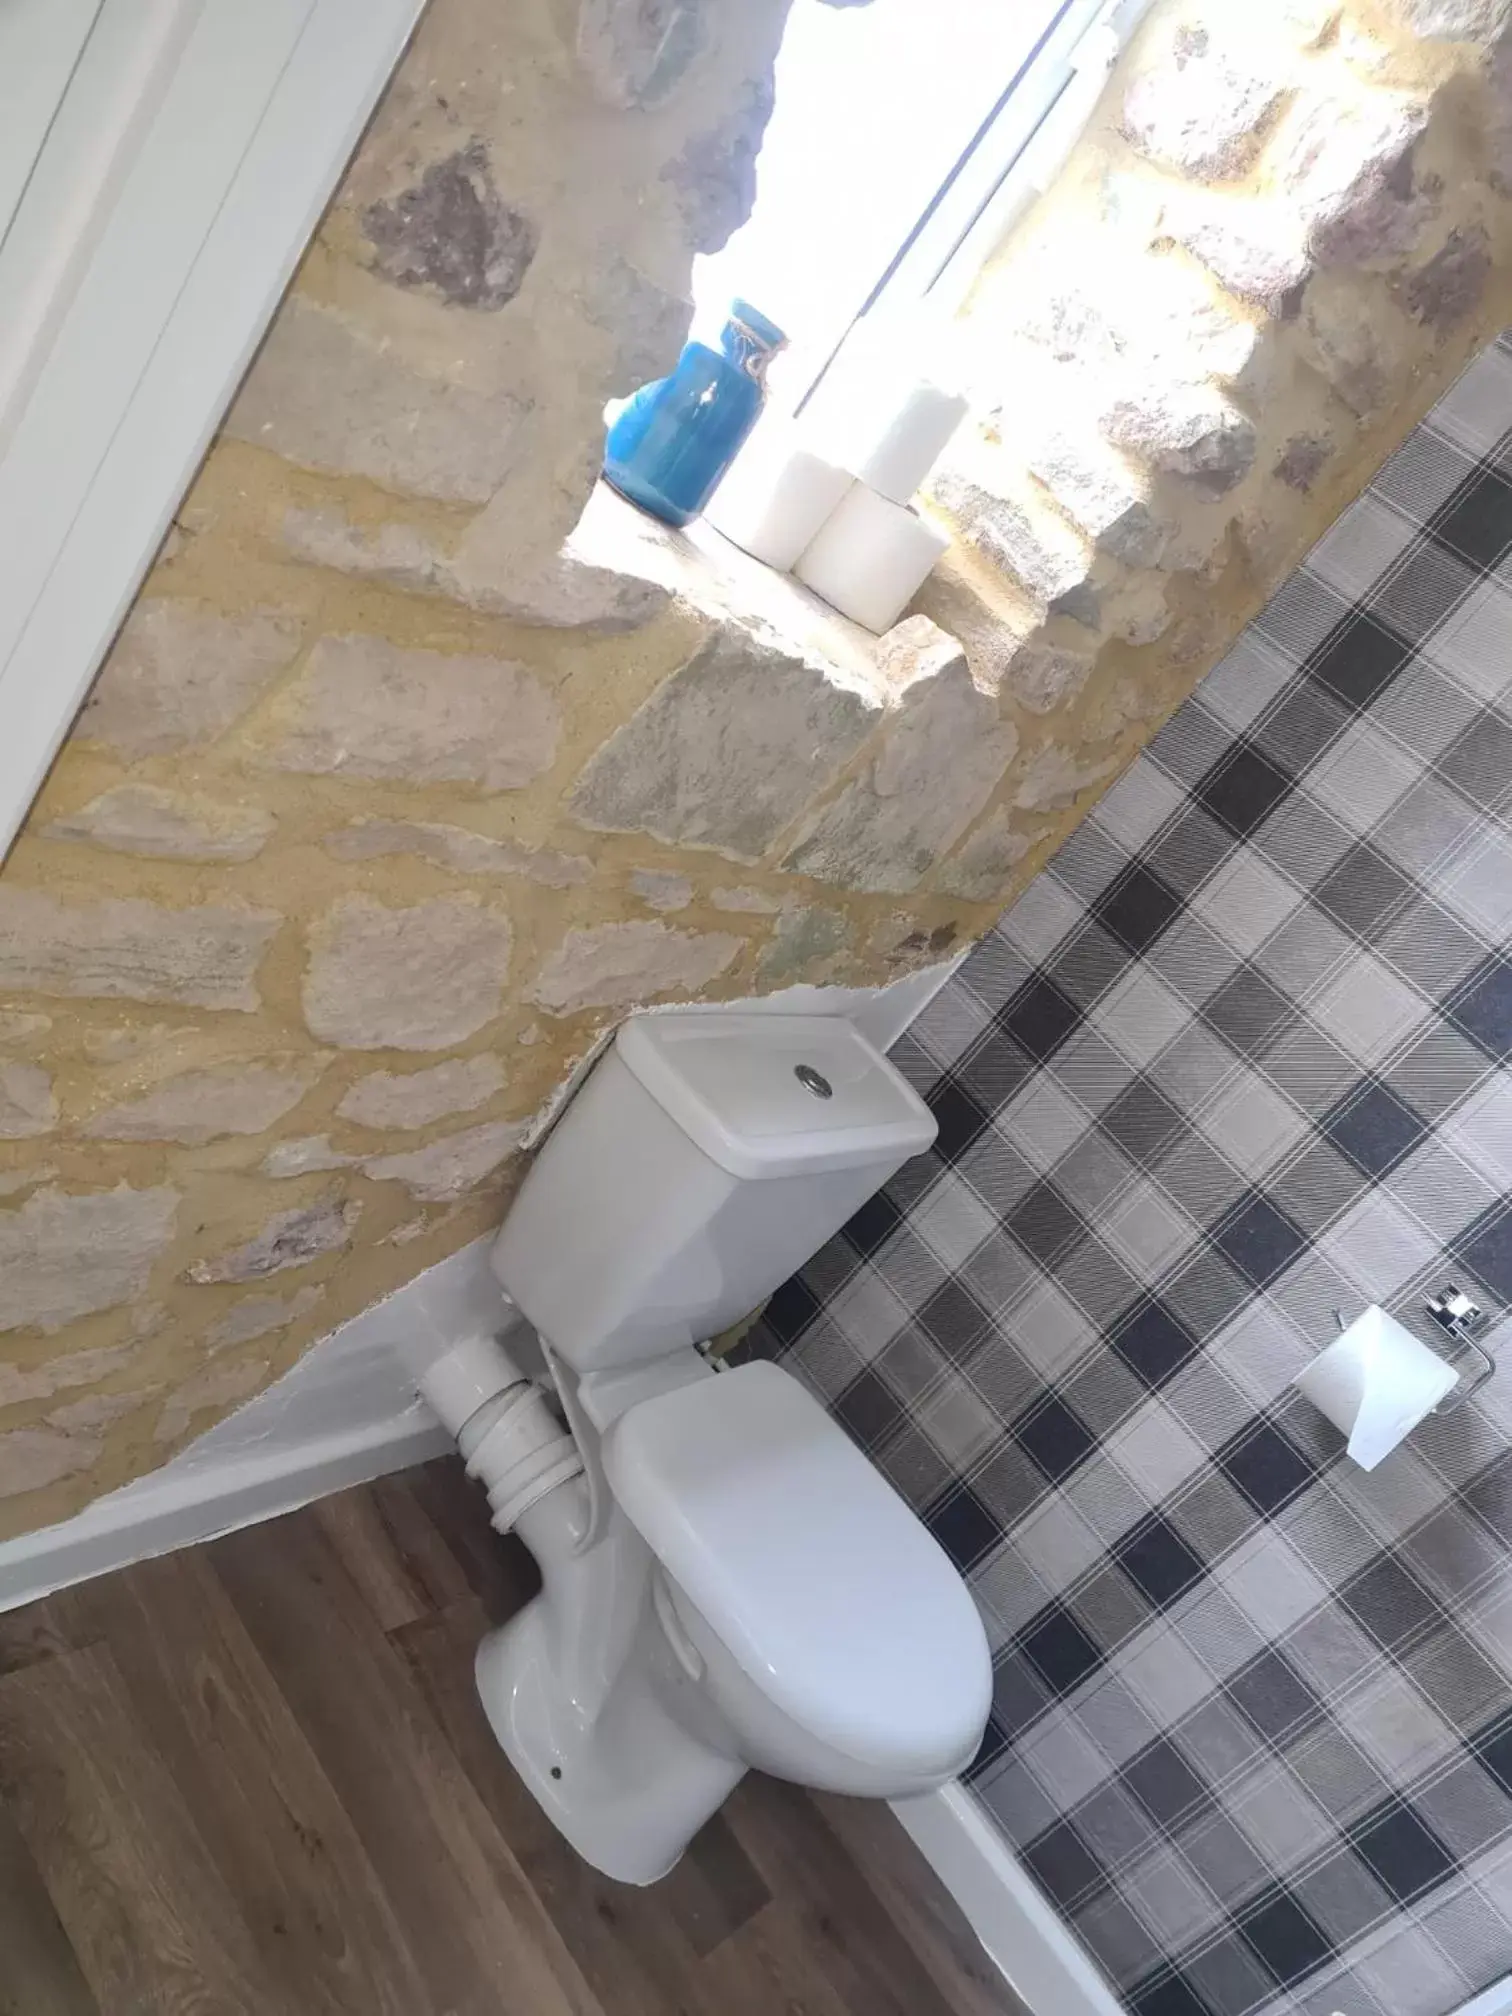 Bathroom in Crosskeys Inn Guest Rooms in Wye Valley